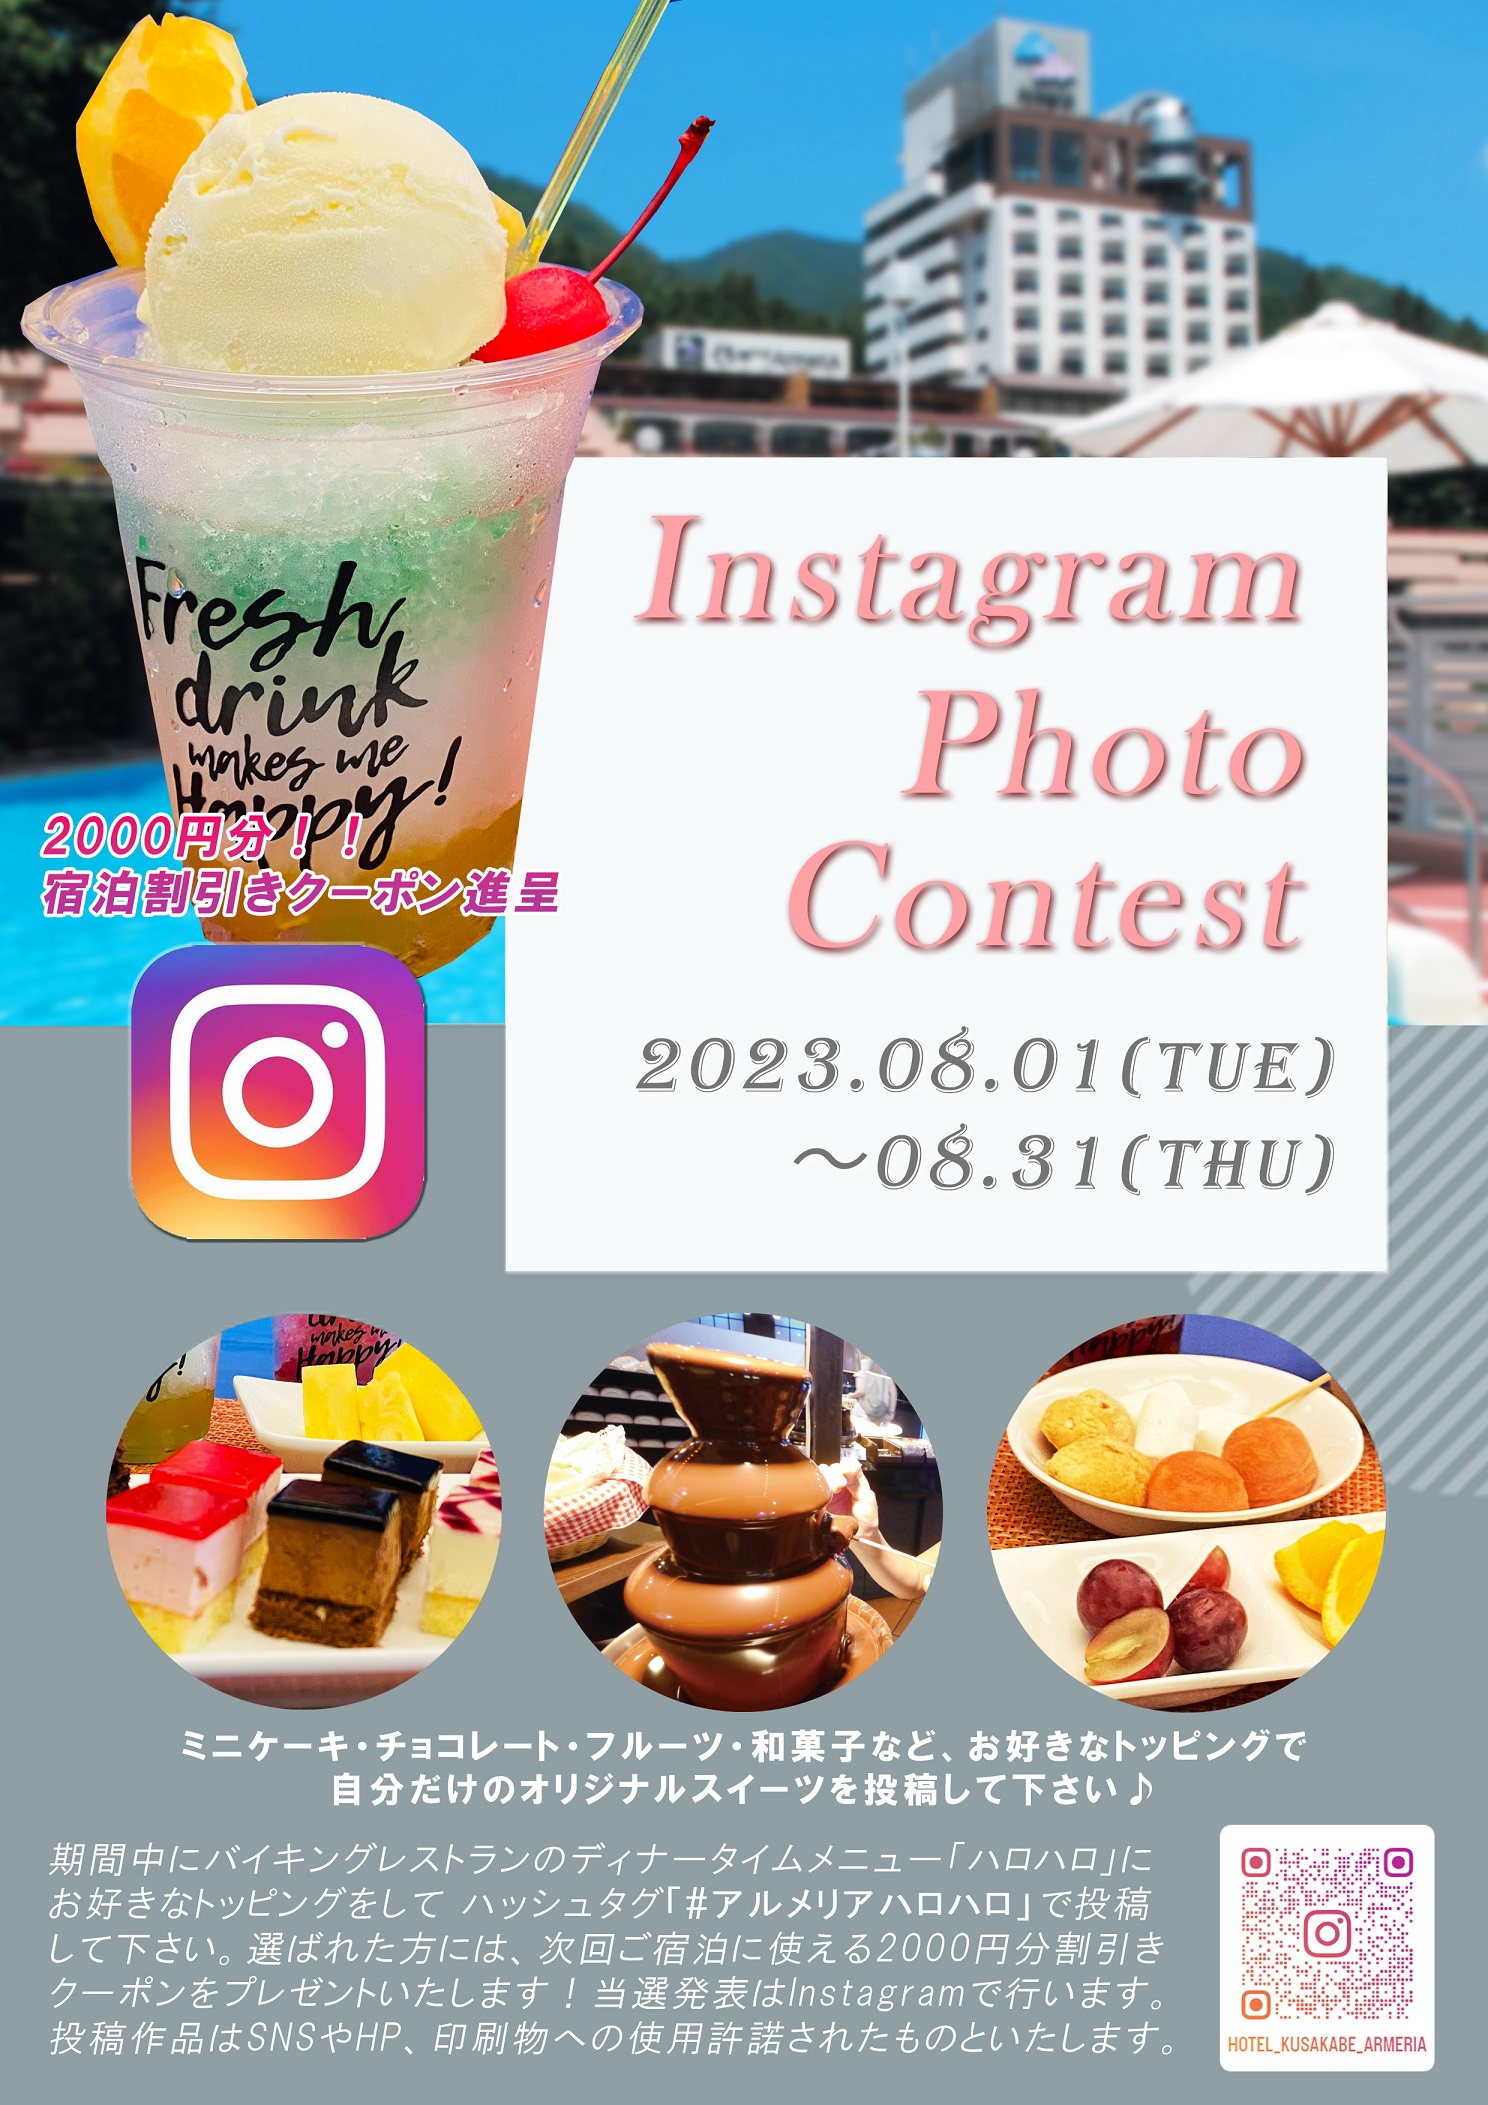 【ホテルくさかべアルメリア】Instagram フォトコンテスト開催！